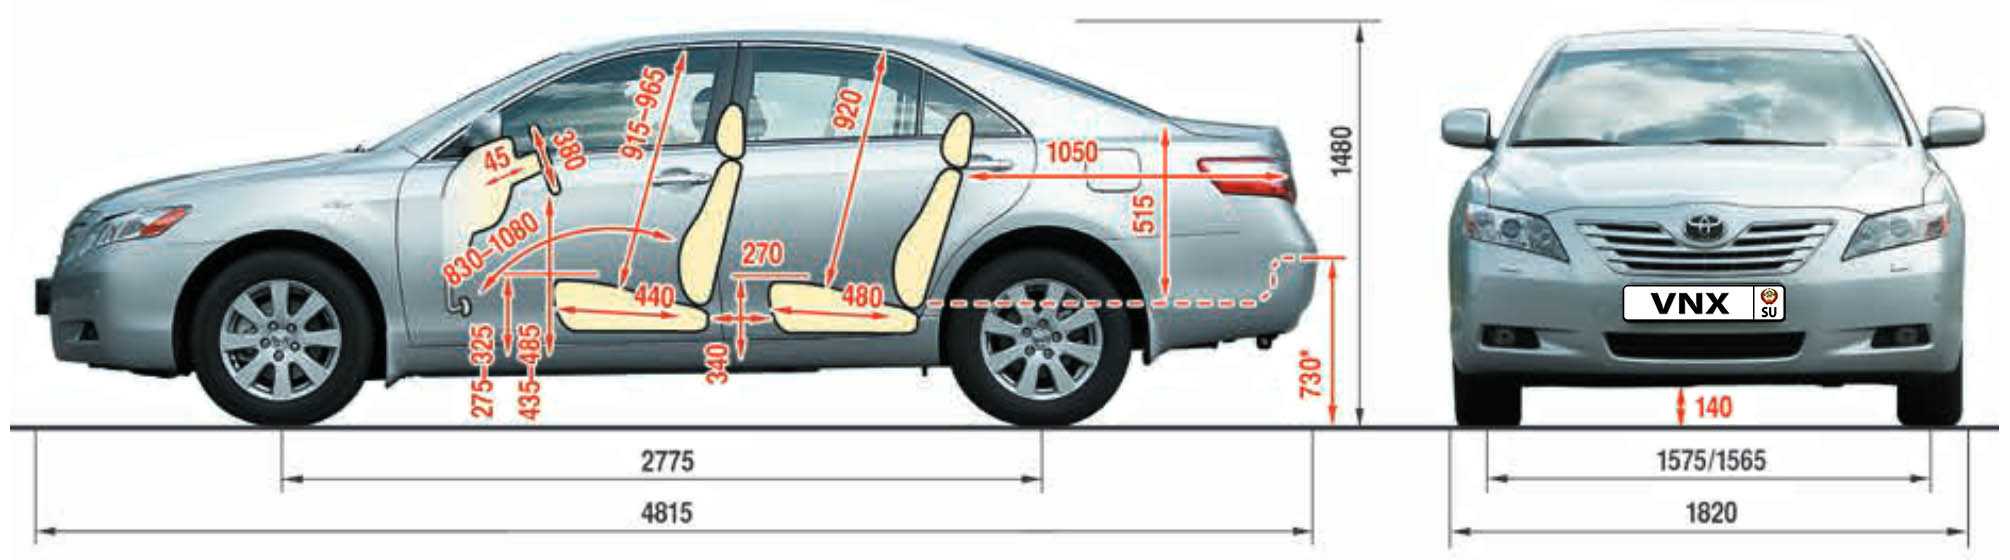 Toyota camri xv50: особенности и технические характеристики